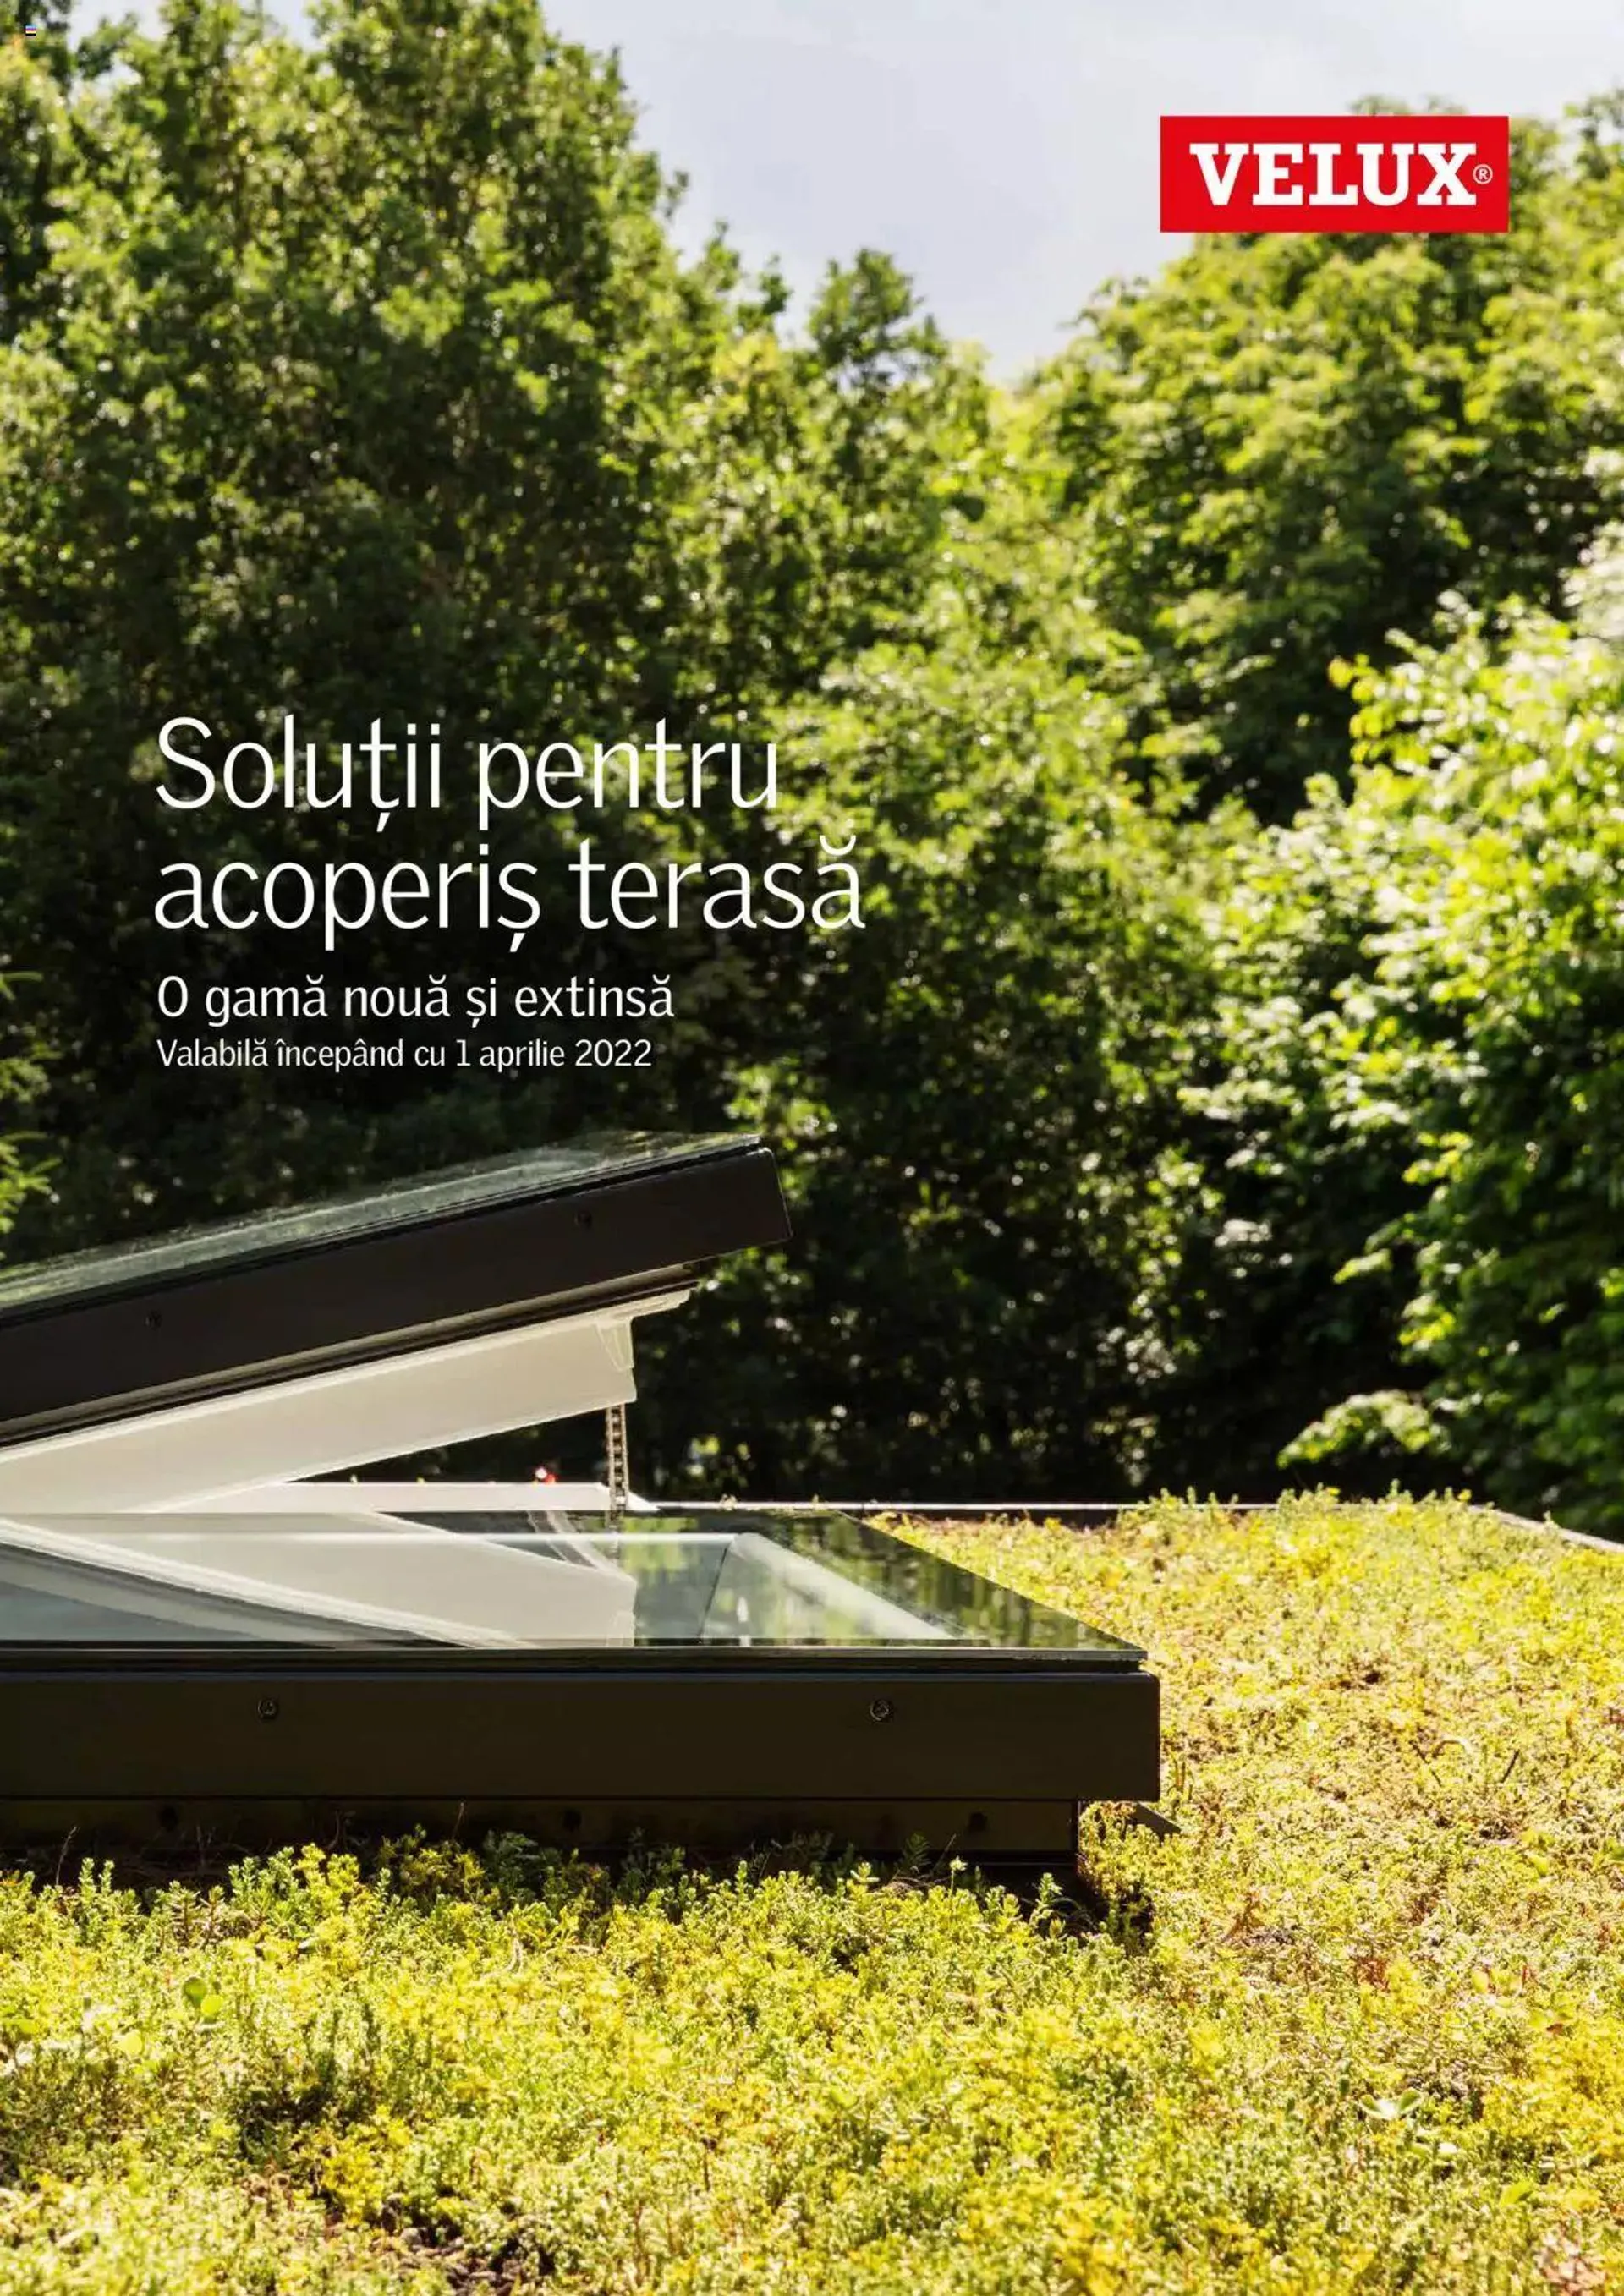 Velux - Noua Generație de ferestre pentru acoperiș terasă 2022 - 0